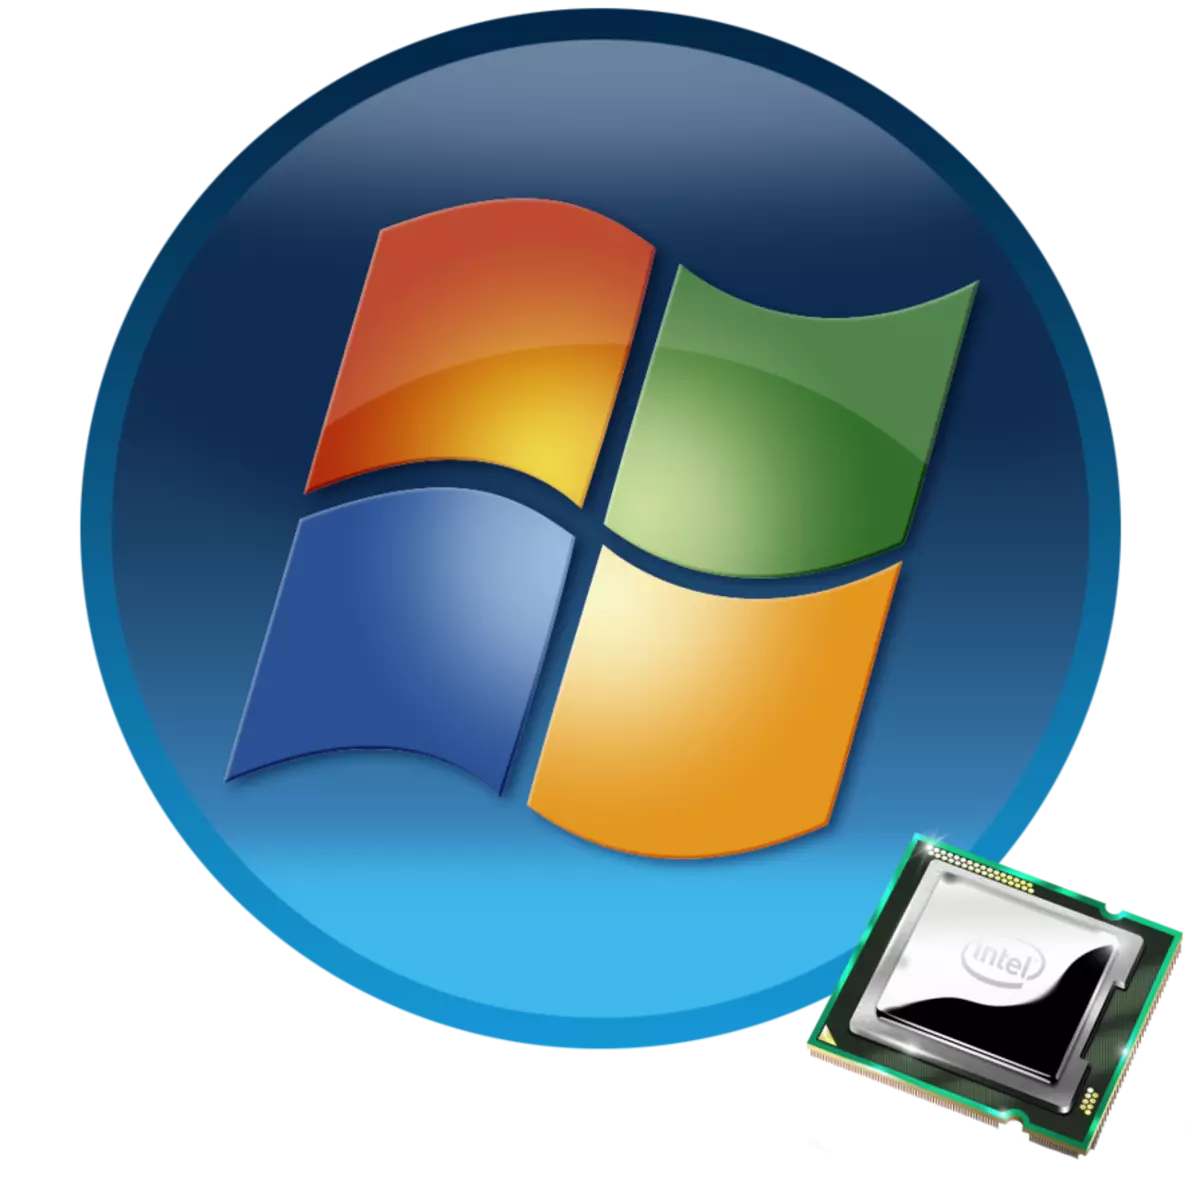 Meriv çawa hemî kernel li ser Windows 7 çalak dike